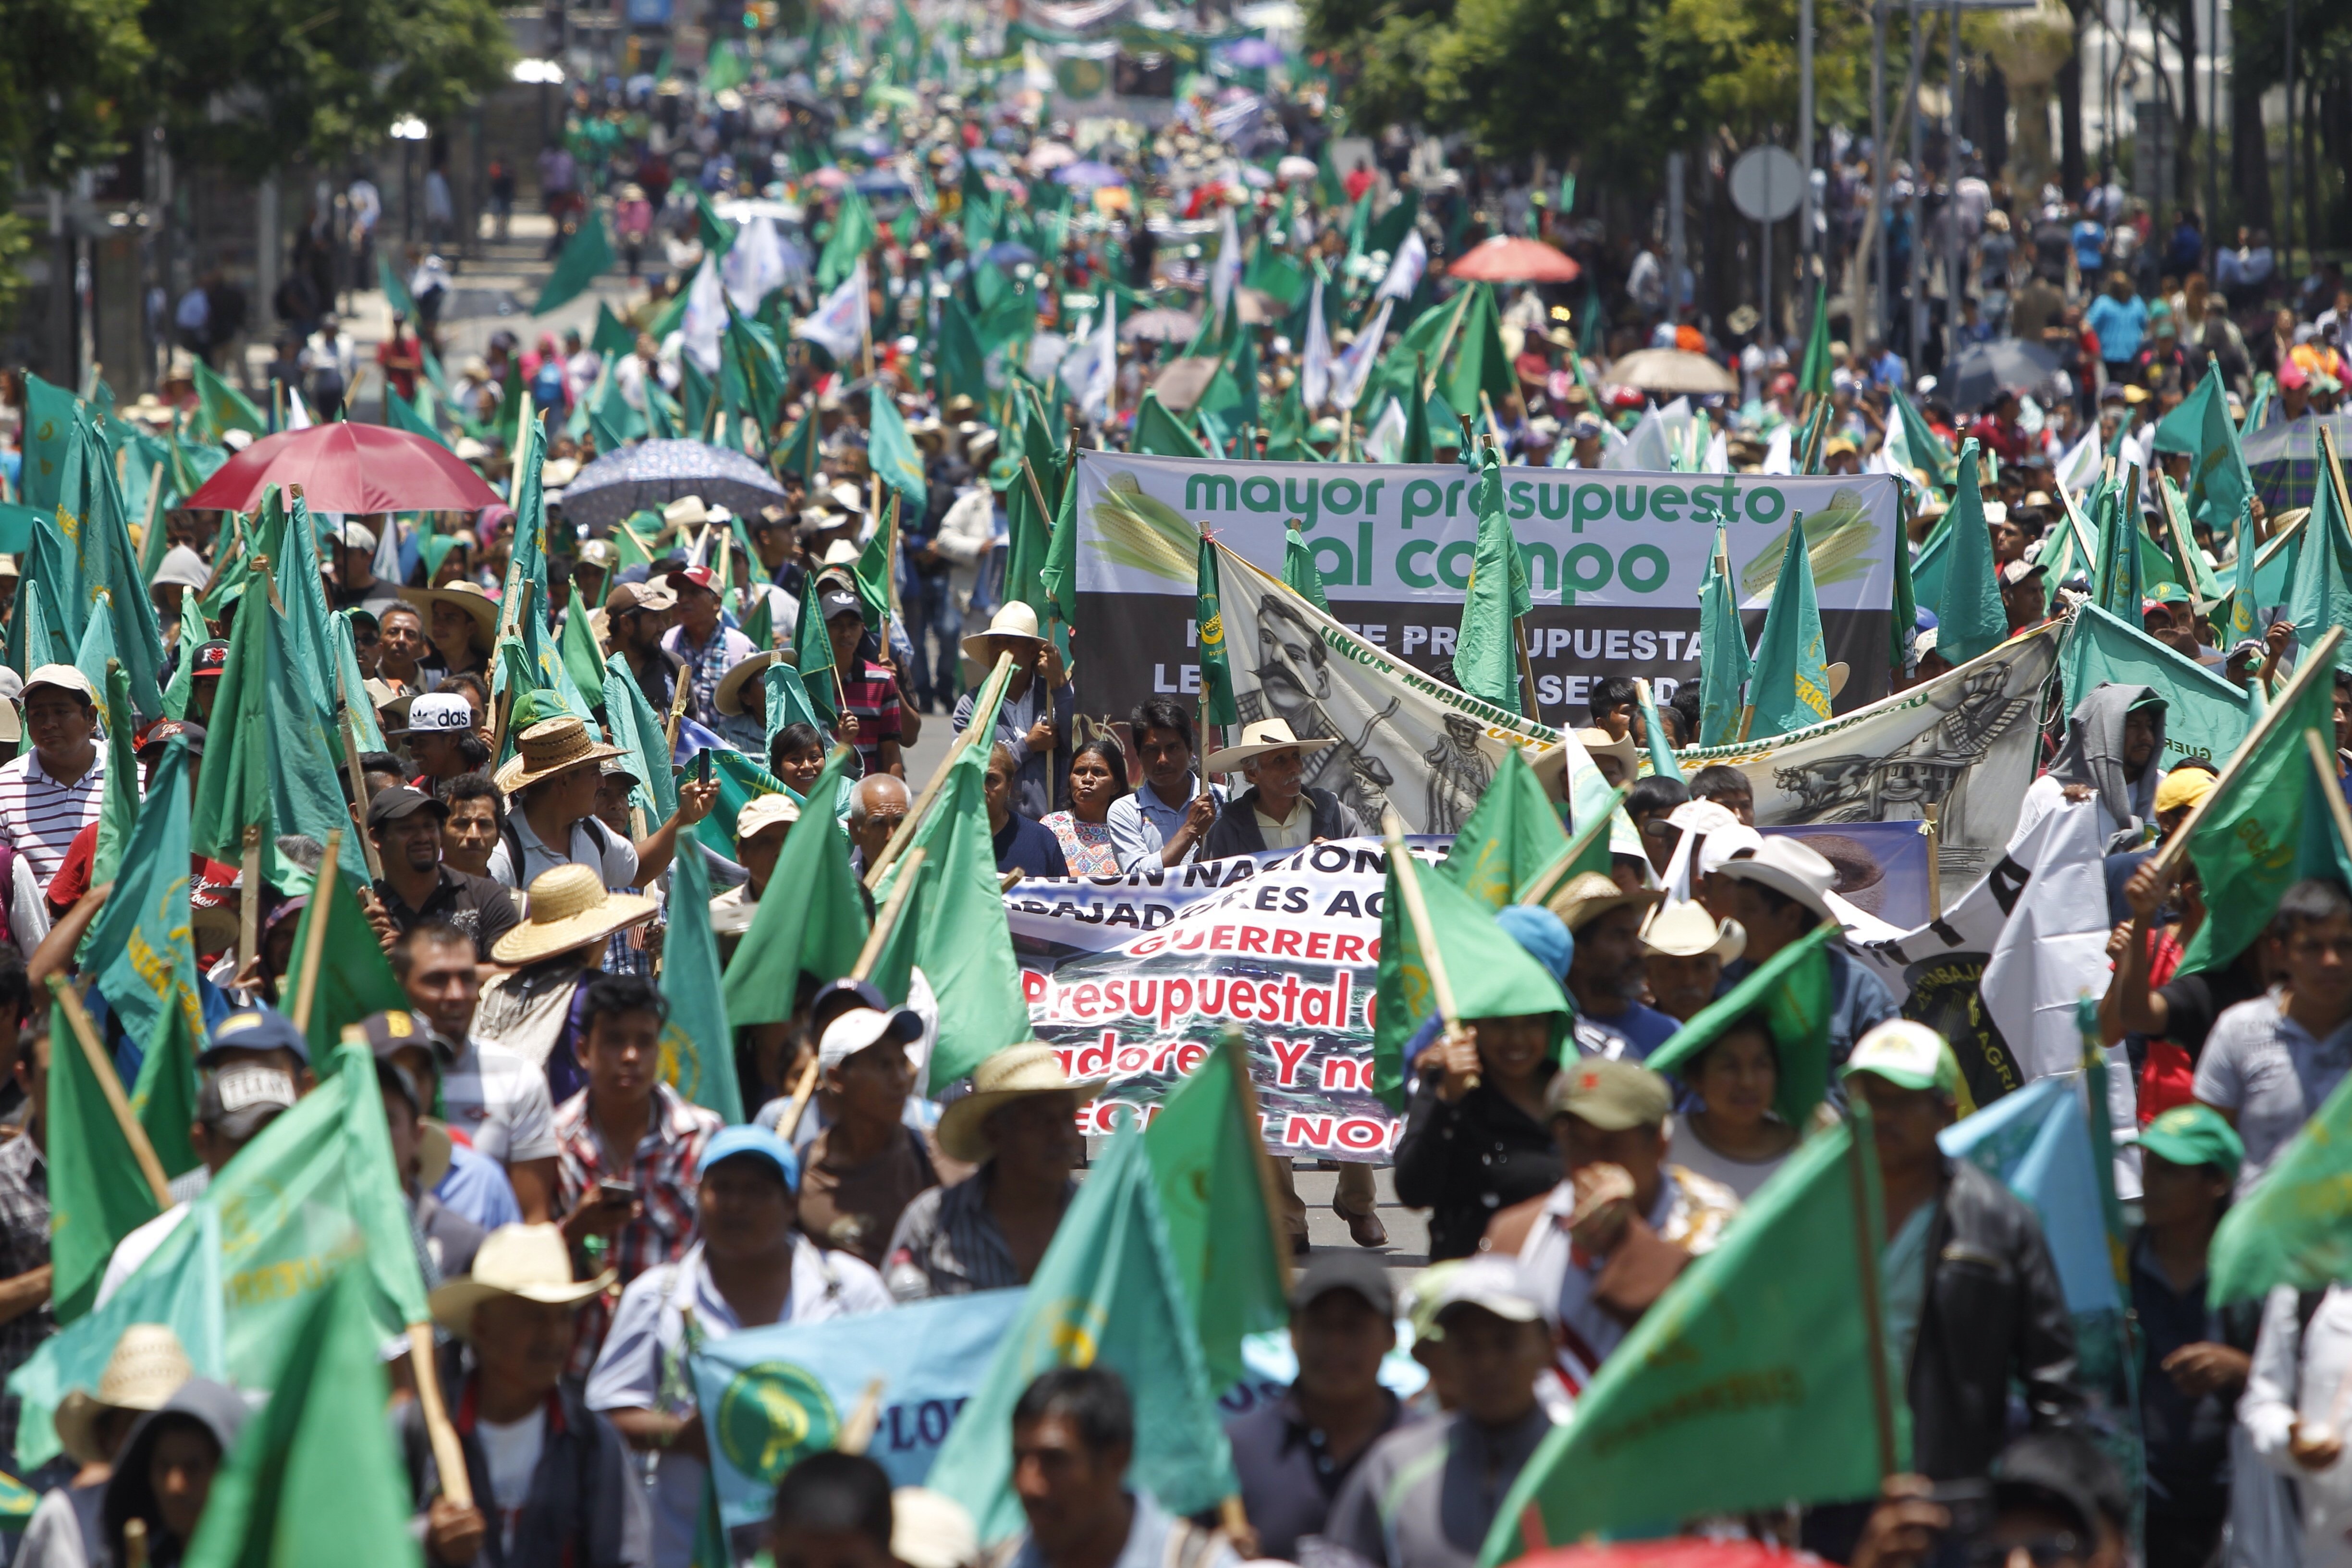  Campesinos de todo México piden eliminar el capítulo agropecuario en el nuevo TLCAN